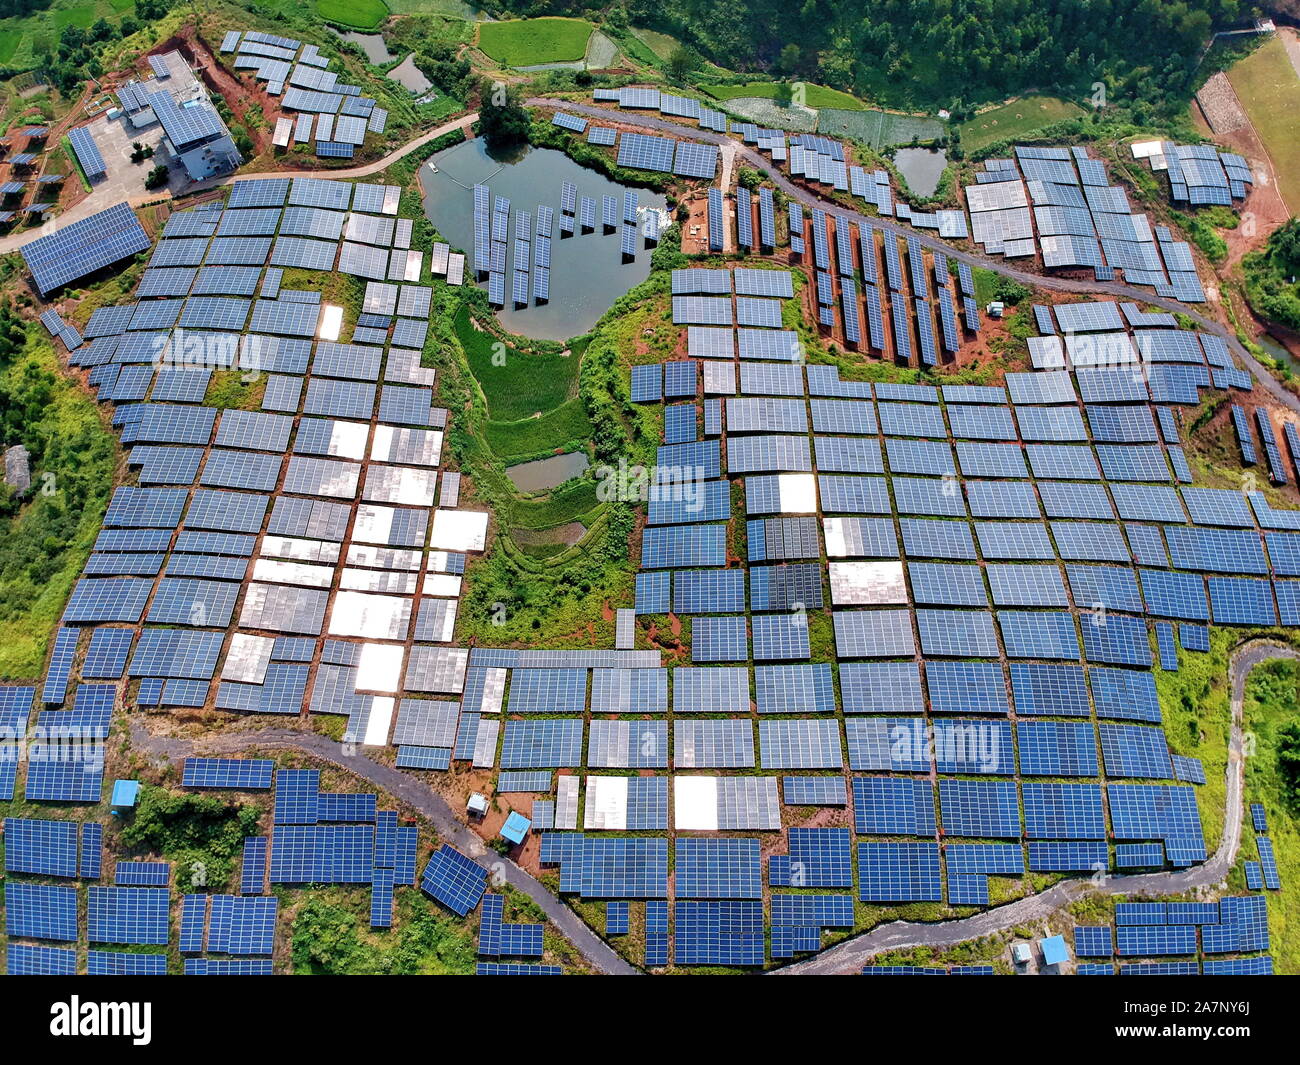 Arrays von Solarzellen im Ödland auf einem Hügel in Huangsha Dorf installiert sind, huichang Zhuangkou Stadt, Grafschaft, Ganzhou City, East China Stockfoto